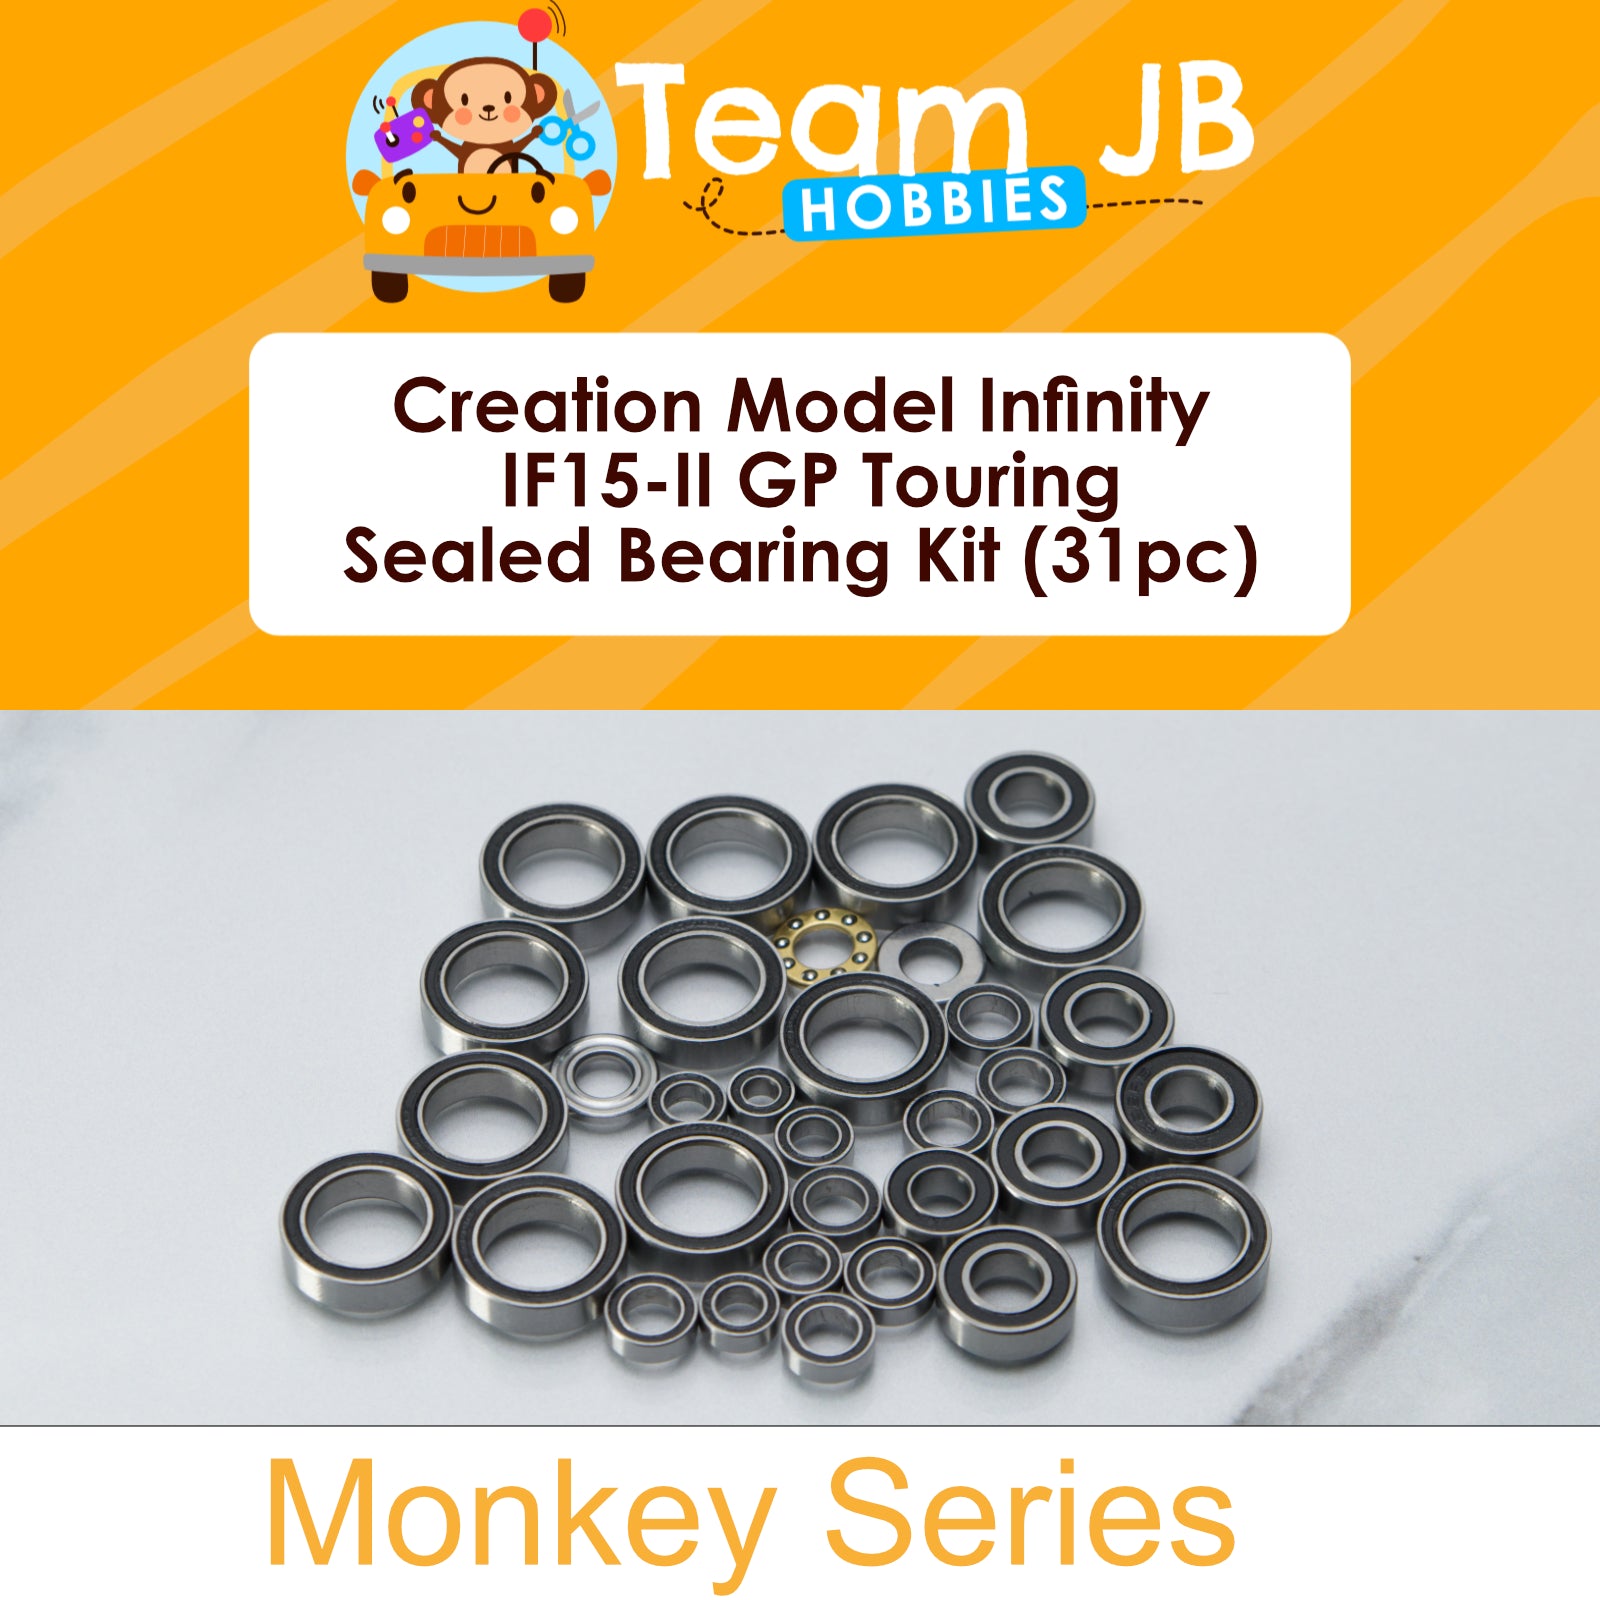 Creation Model Infinity IF15-II GP Touring - Sealed Bearing Kit